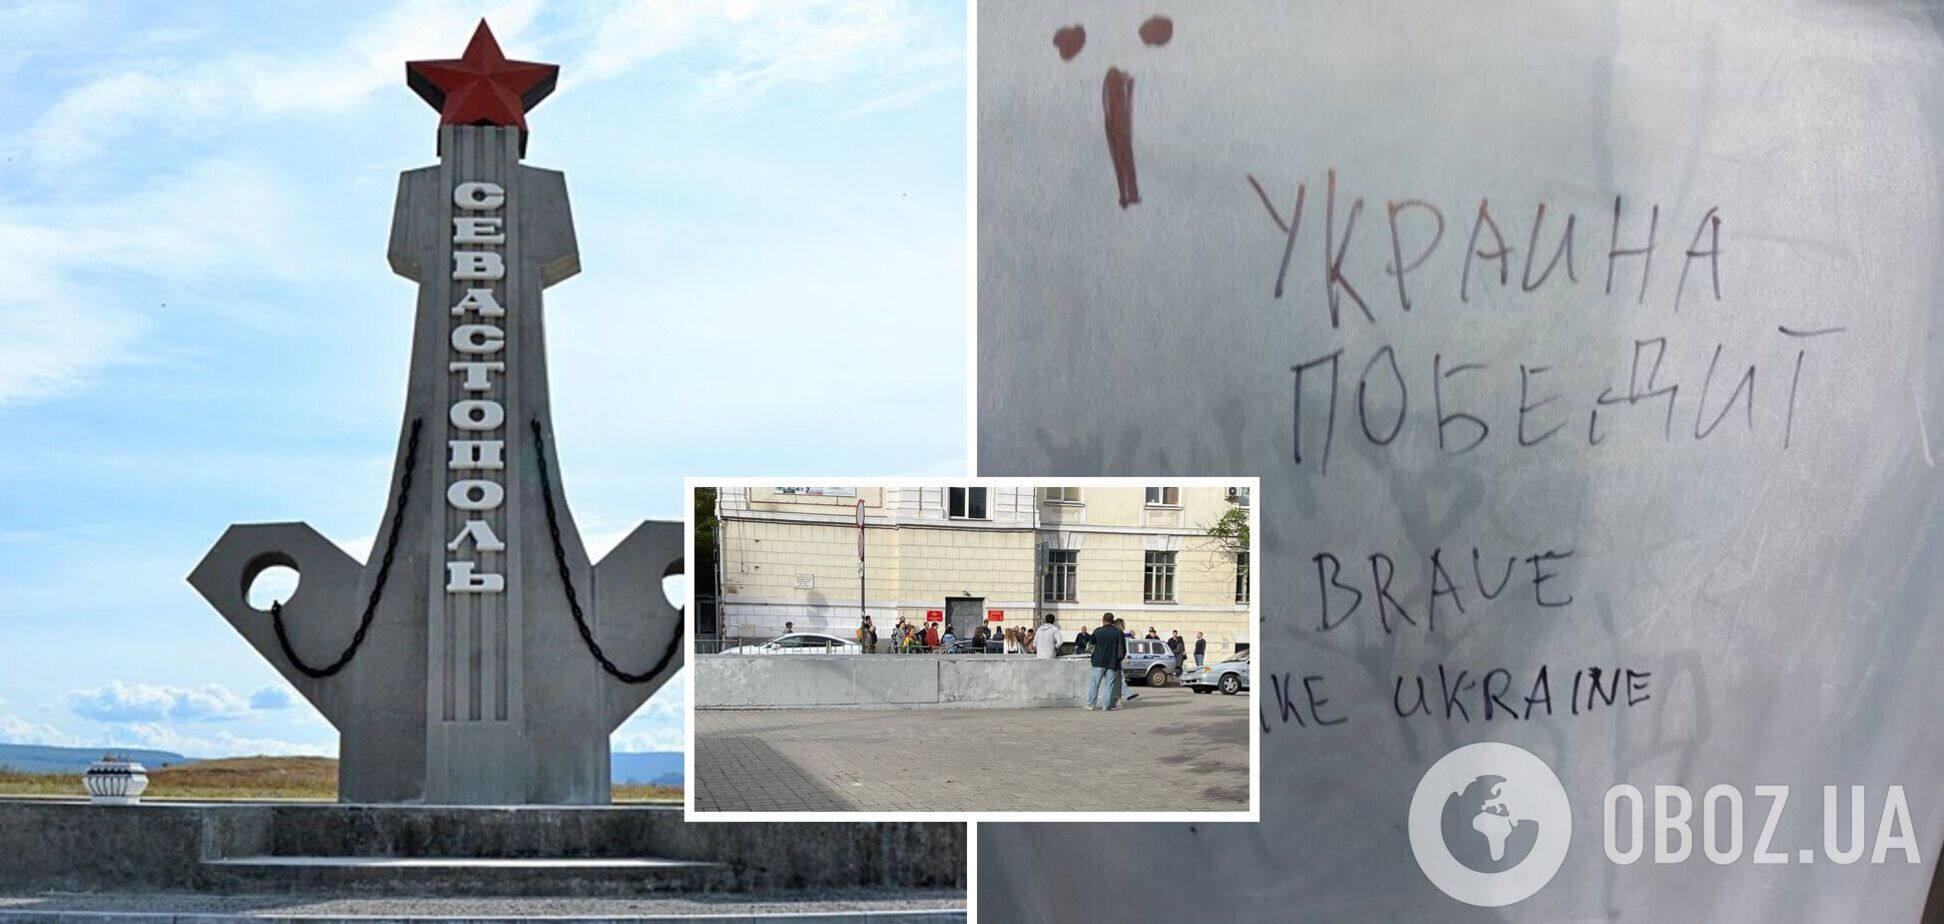 В оккупированном Крыму идет мобилизация на войну против Украины, но патриоты верят в победу ВСУ и оставляют 'послания'. Фото